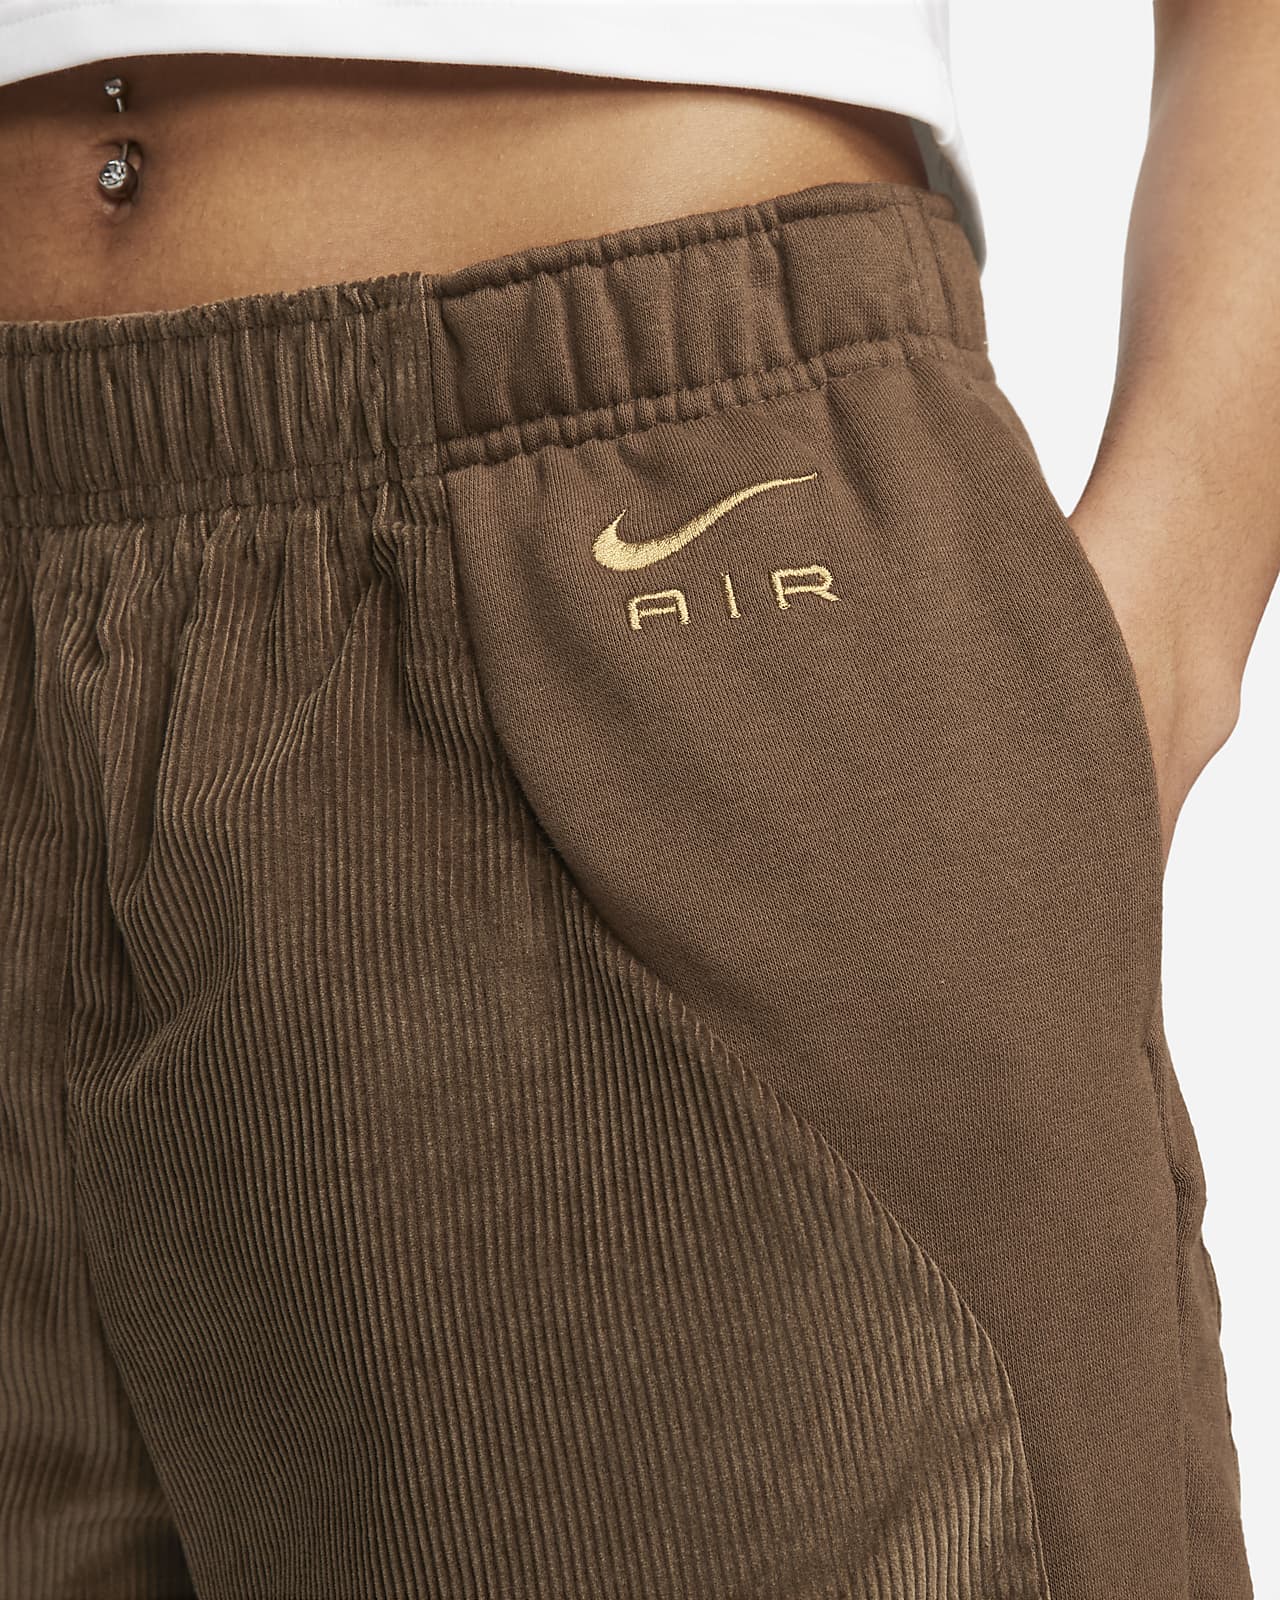 Pantalon en tissu Fleece velours côtelé Nike Air pour femme. FR